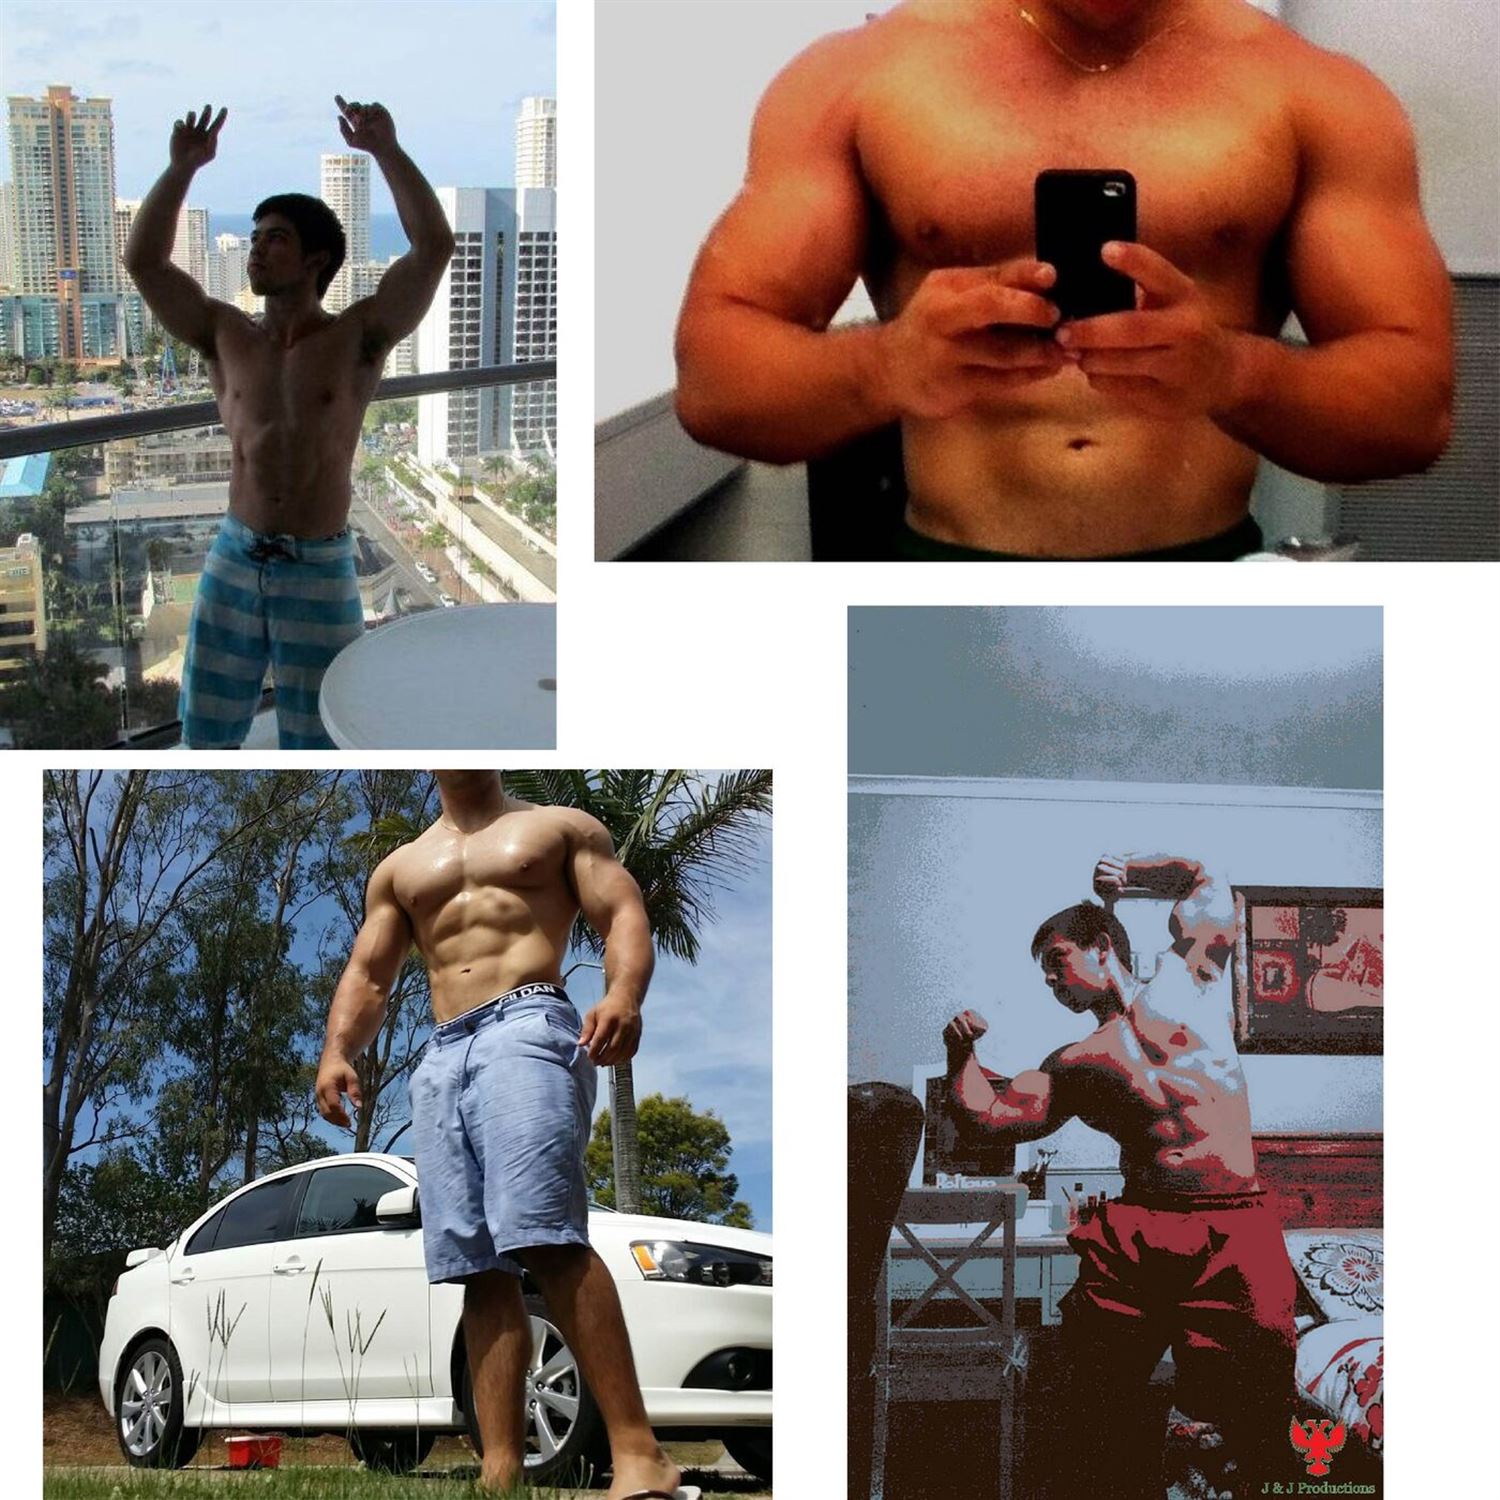 Juan's progression pics